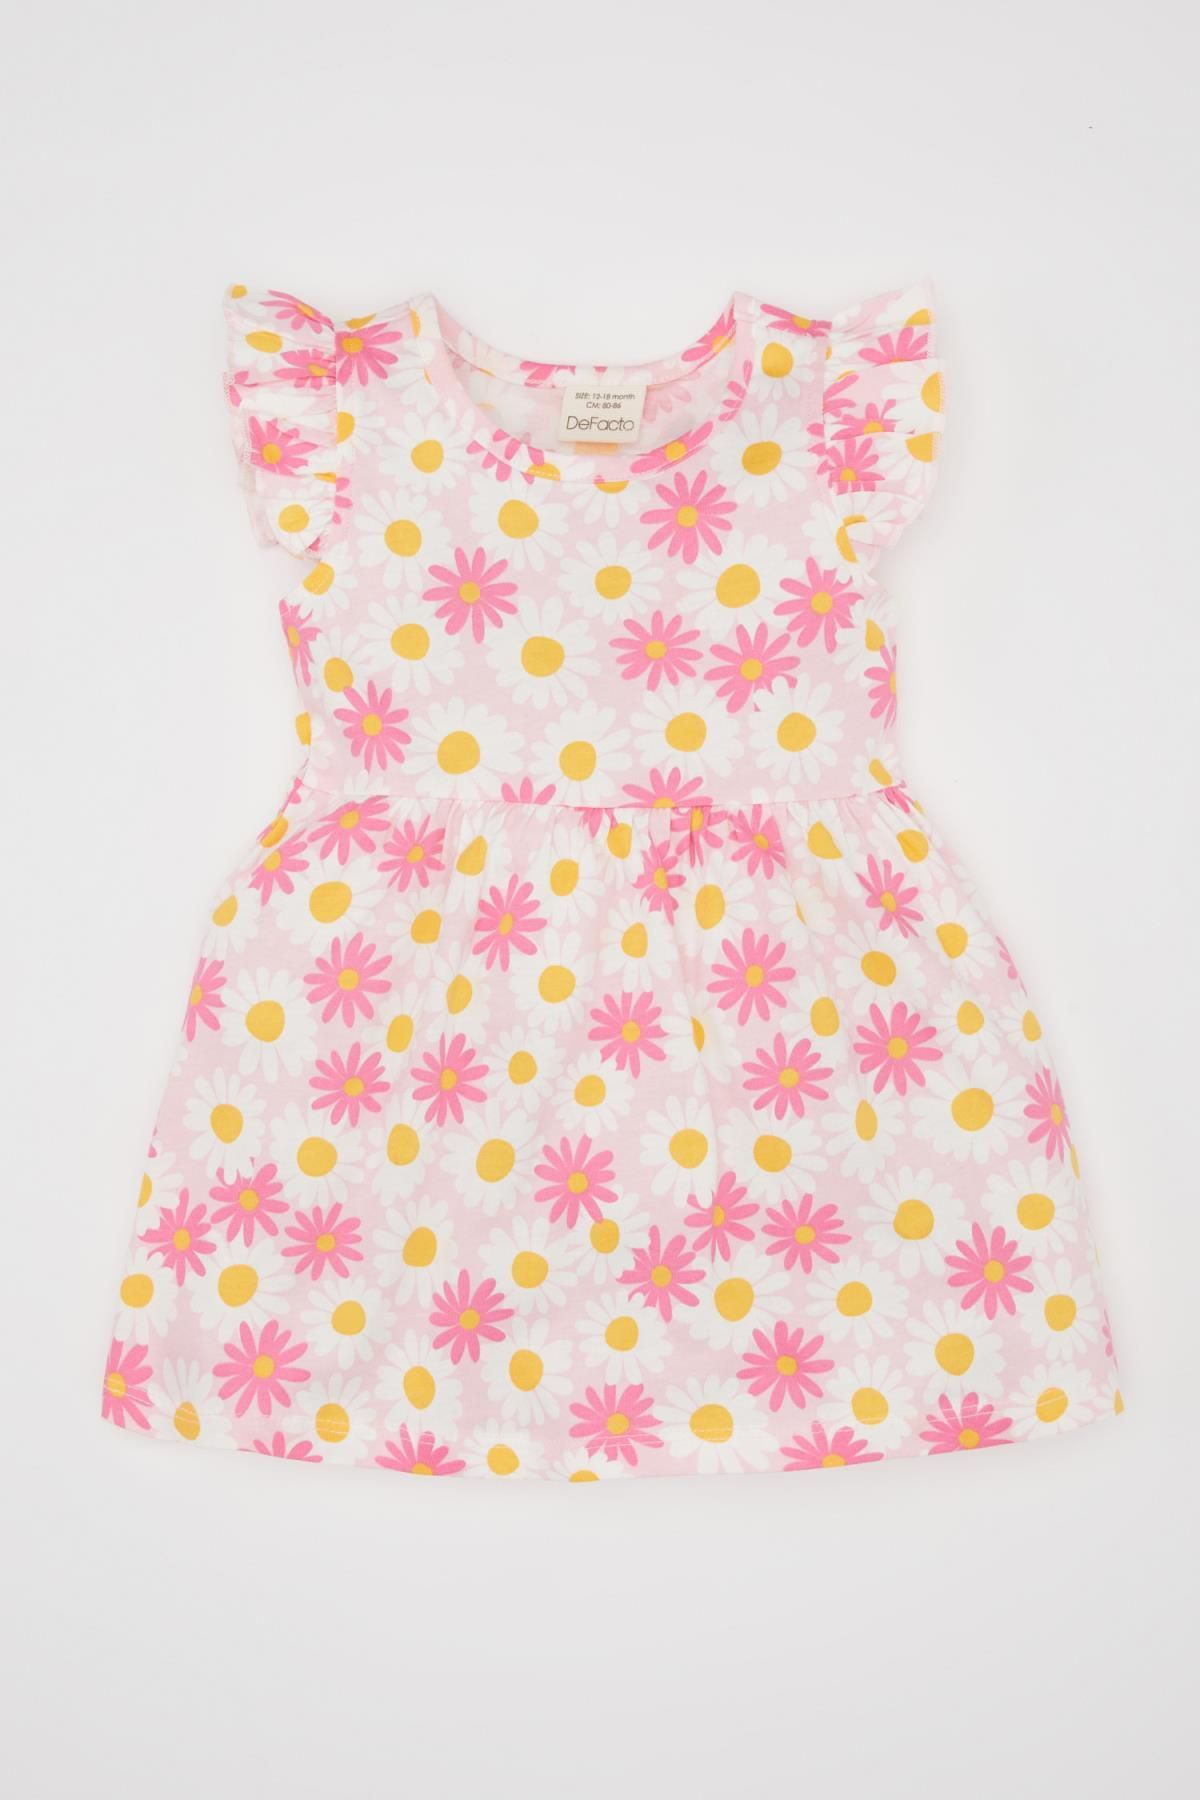 Defacto Kız Bebek Desenli Kolsuz Elbise A0136a524sm